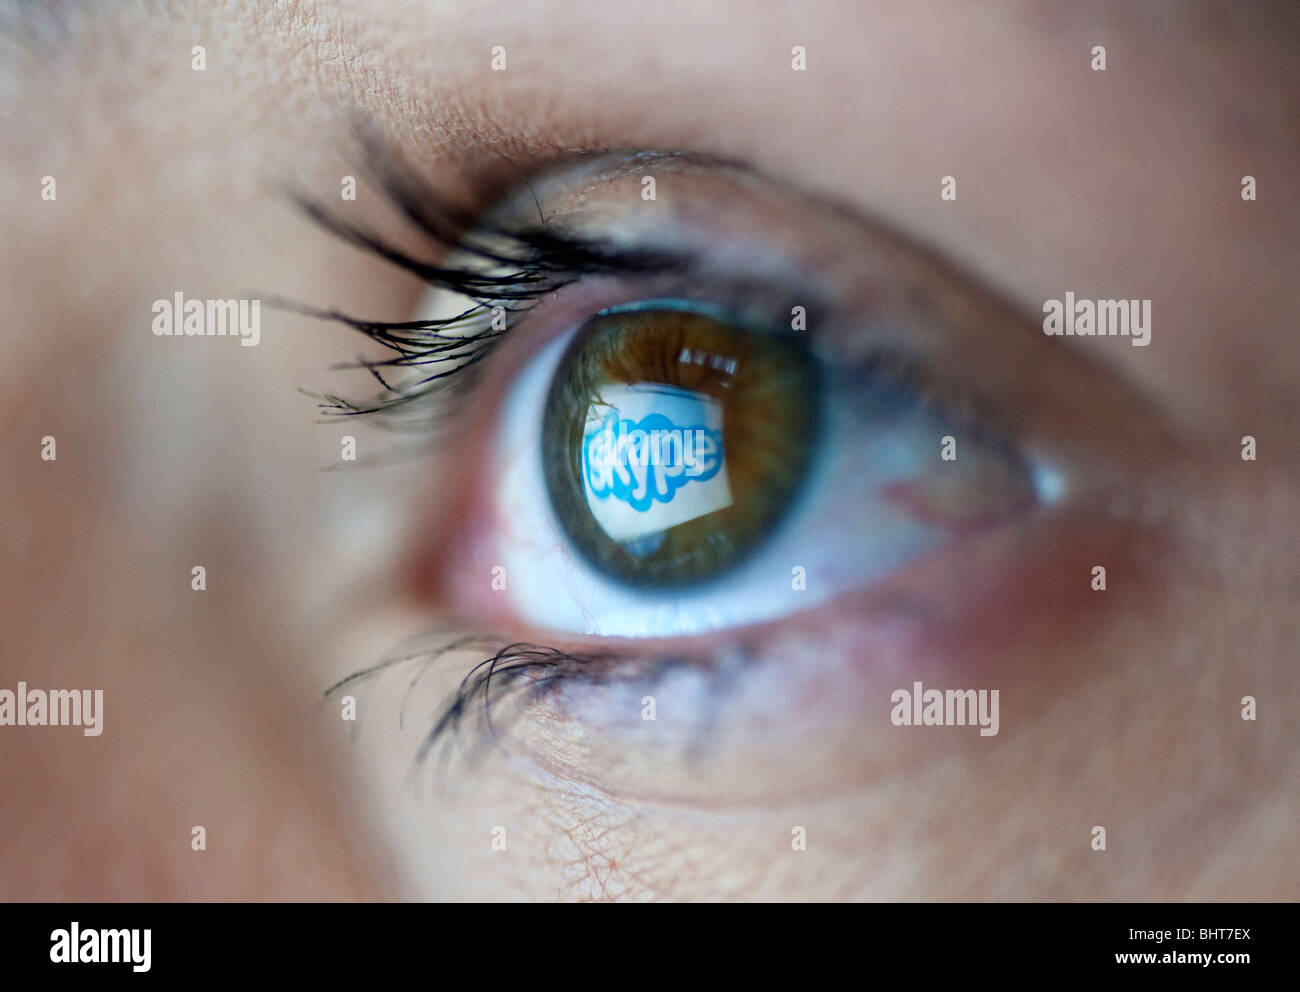 Skype telefono internet e video logo sito riflessa in occhi di donna da schermo del computer Foto Stock